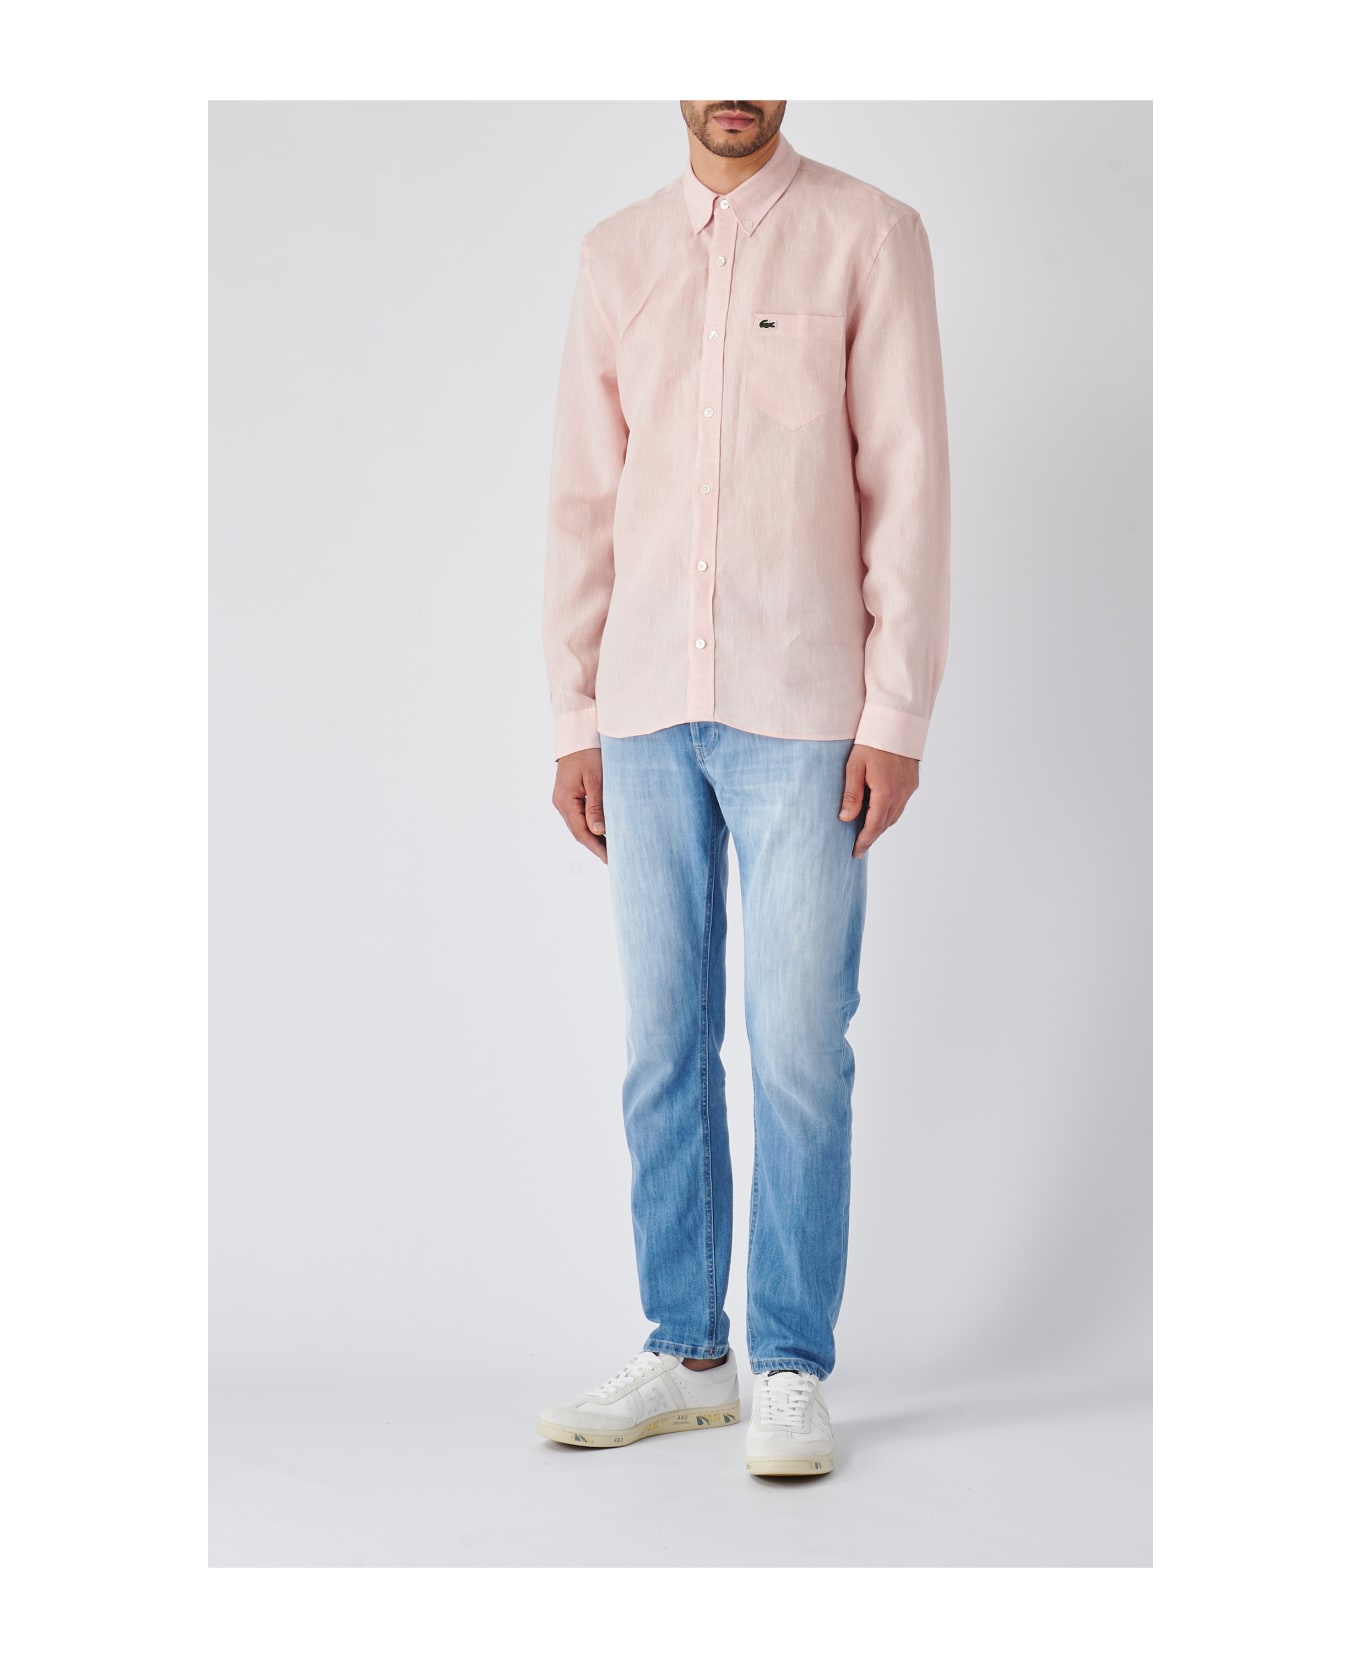 Lacoste Camicia M/l Shirt - ROSA ANTICO シャツ